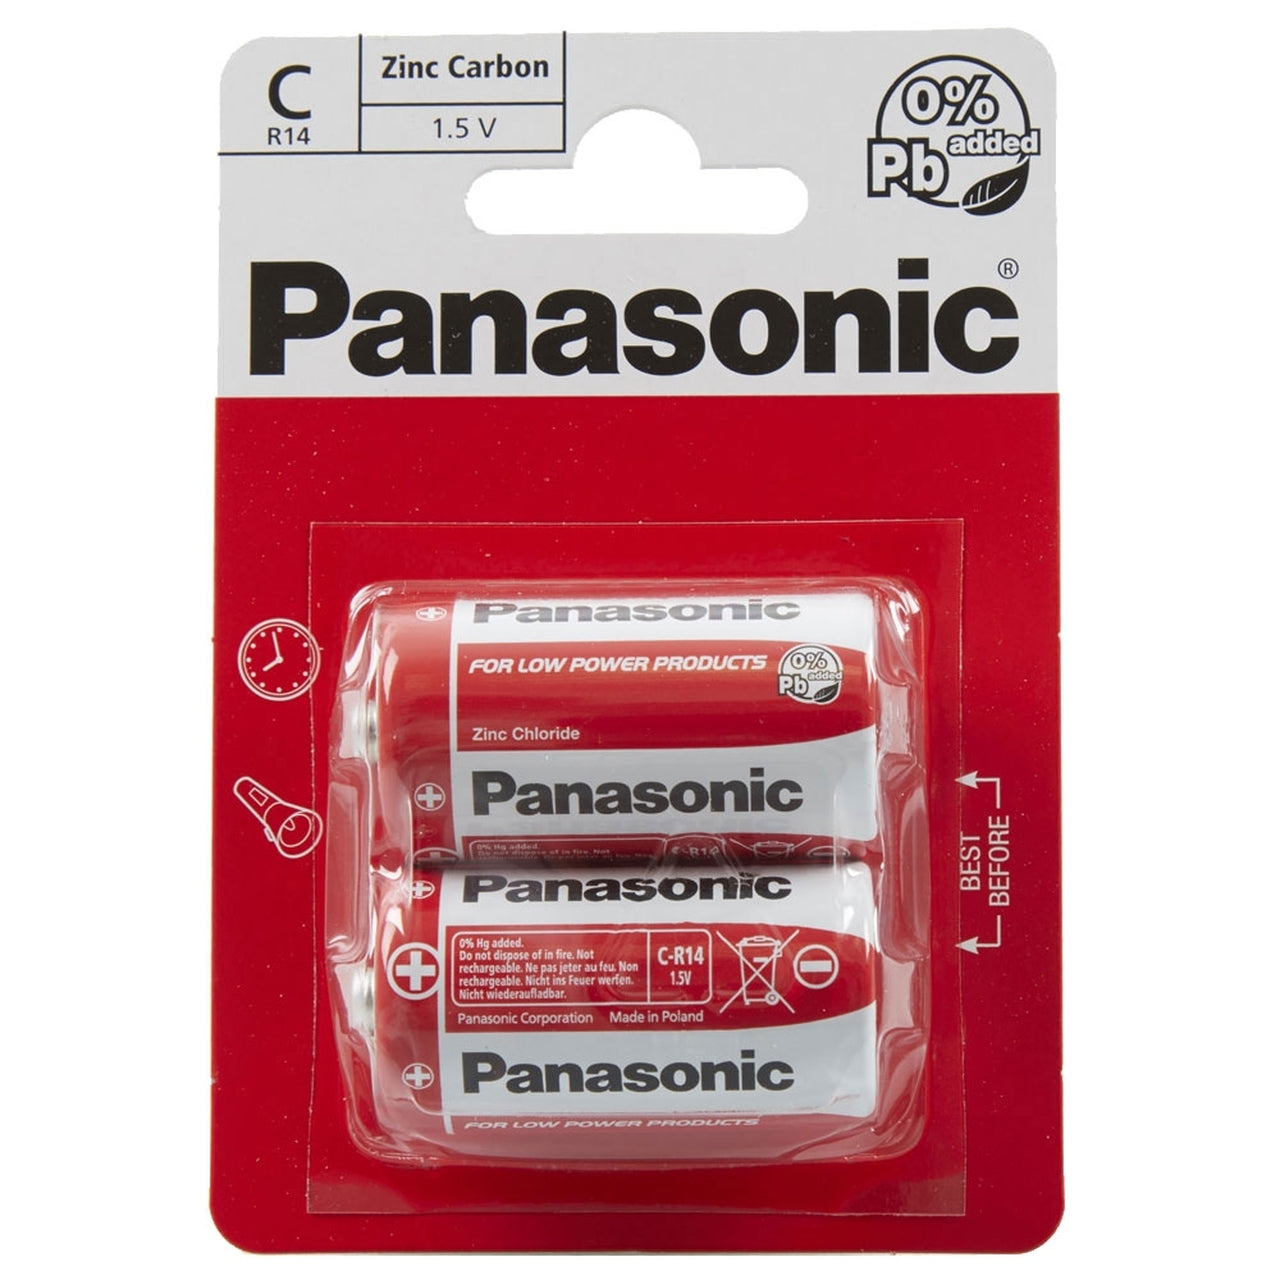 Panasonic C R14 Zinc Carbon Batteries (12 Pack)